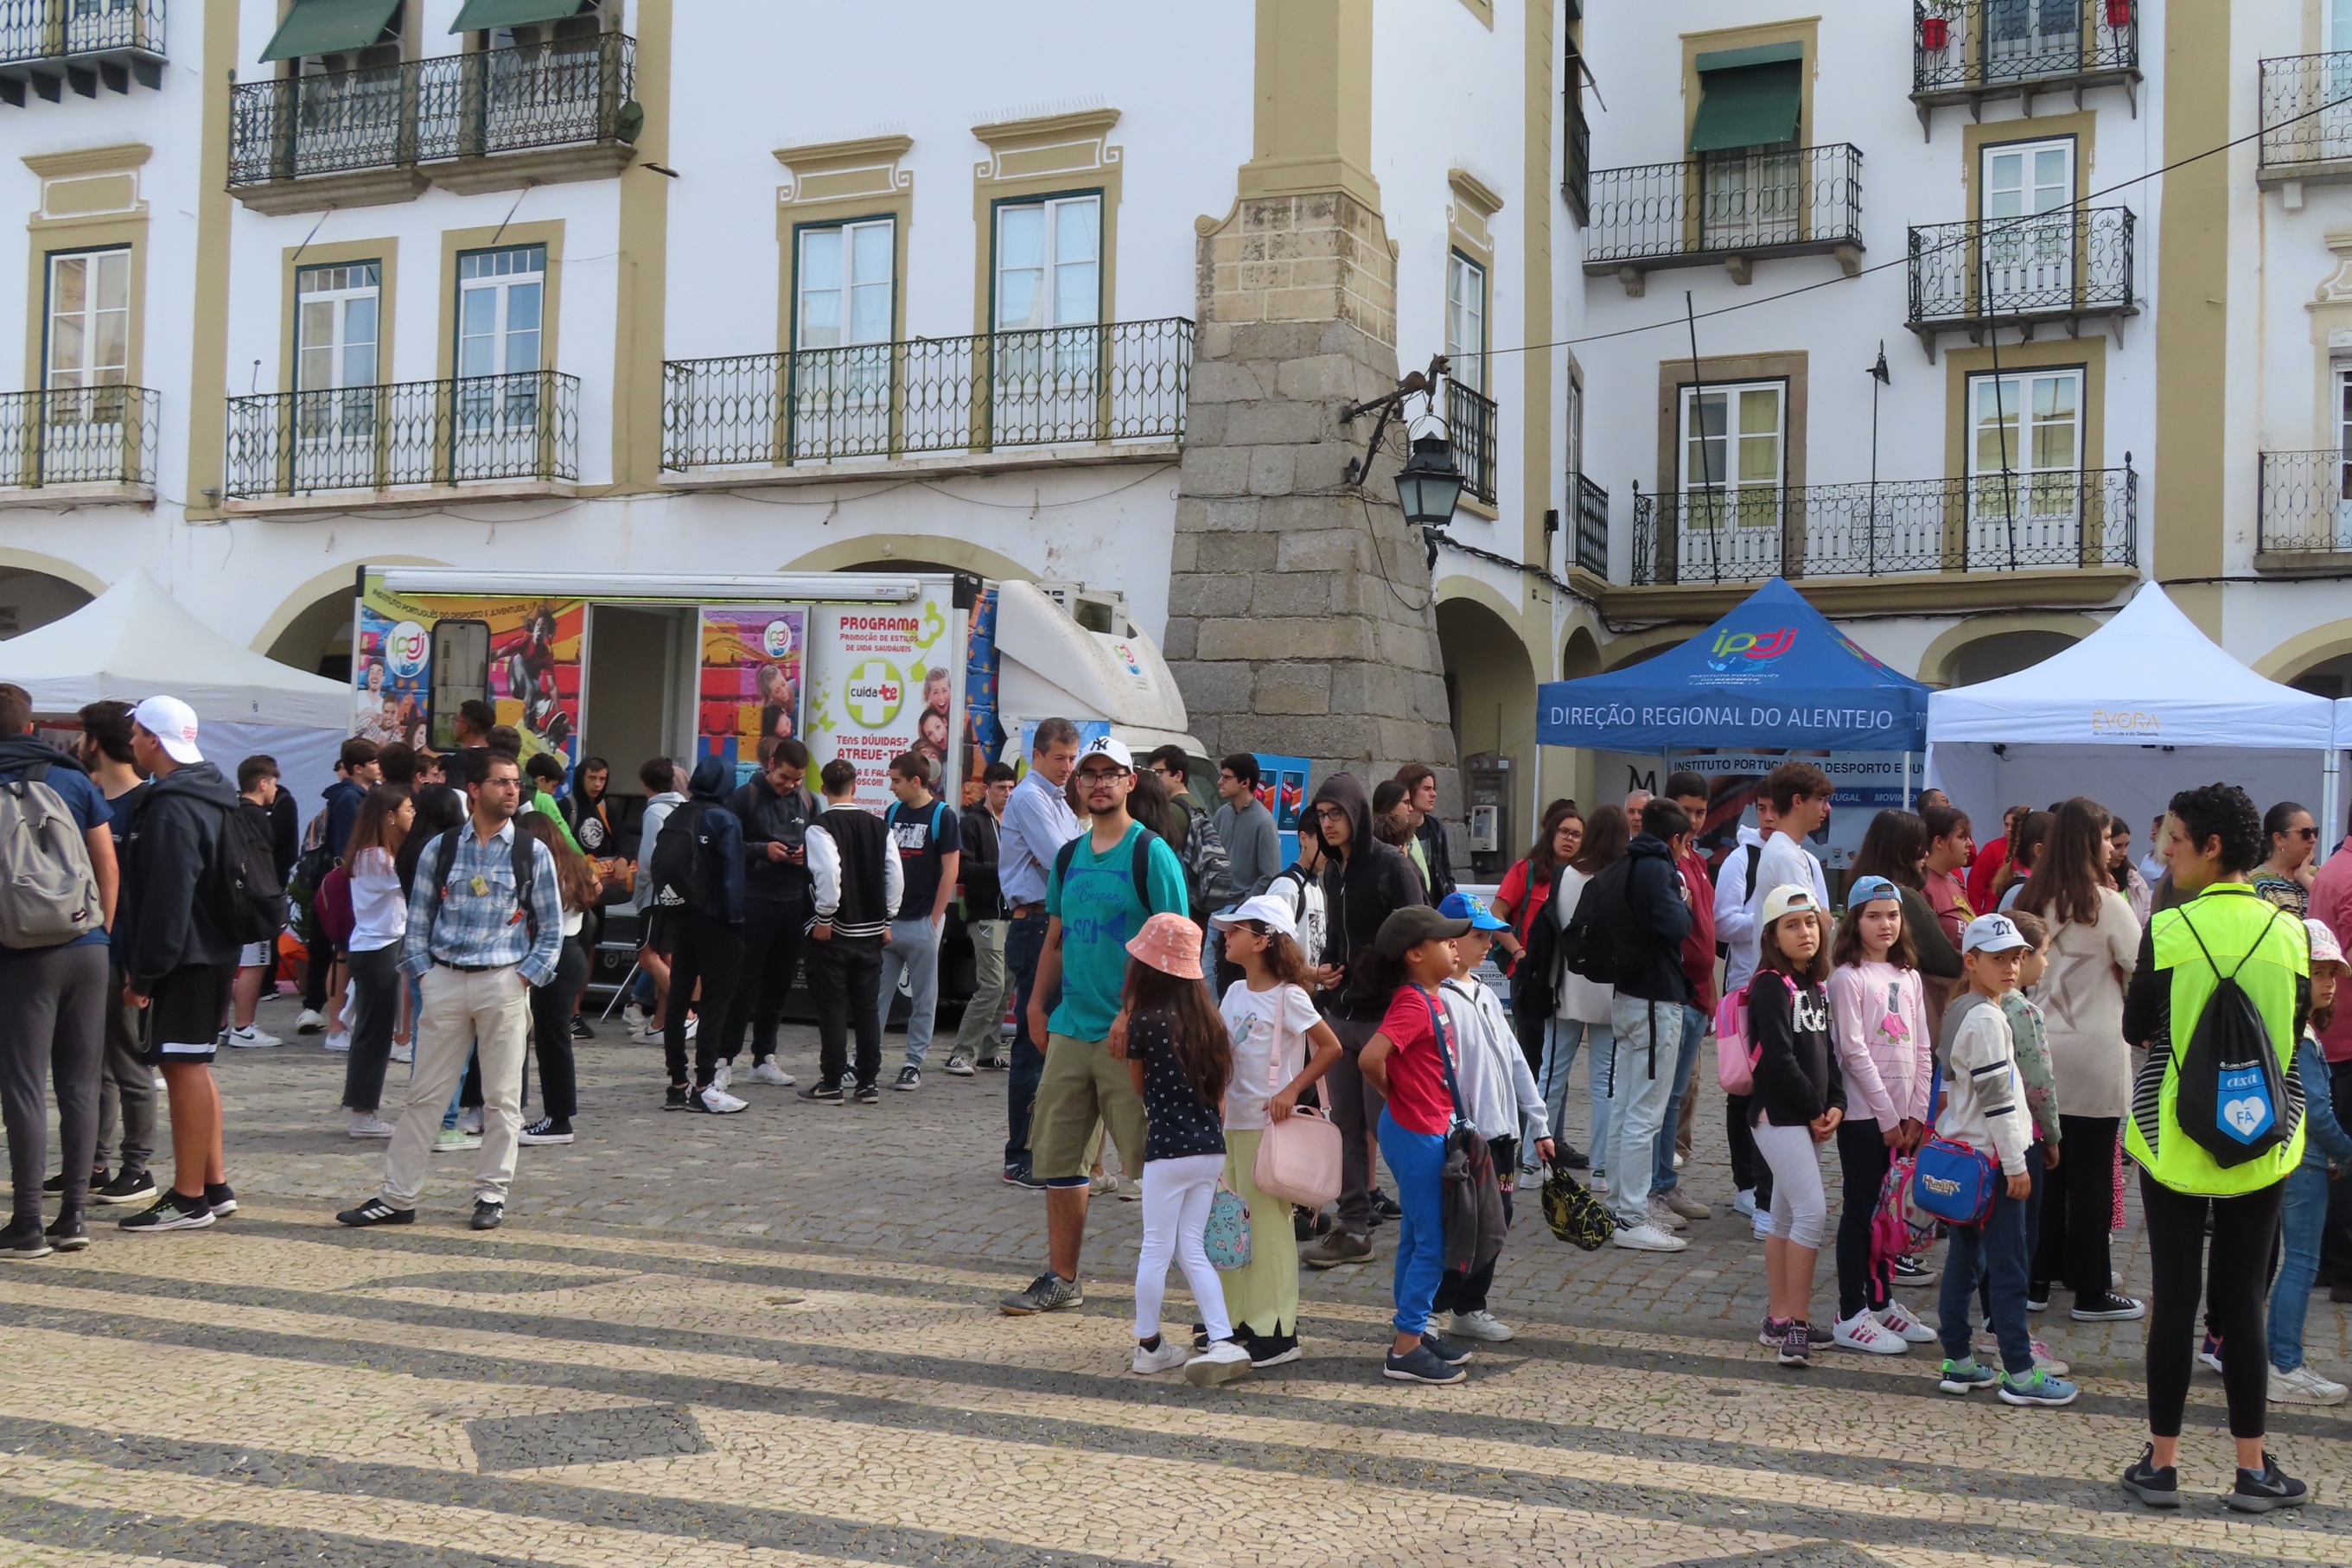 Várias pessoas na Praça do Giraldo, junto à Unidade Móvel Cuida-te +, e junto ao toldo IPDJ.